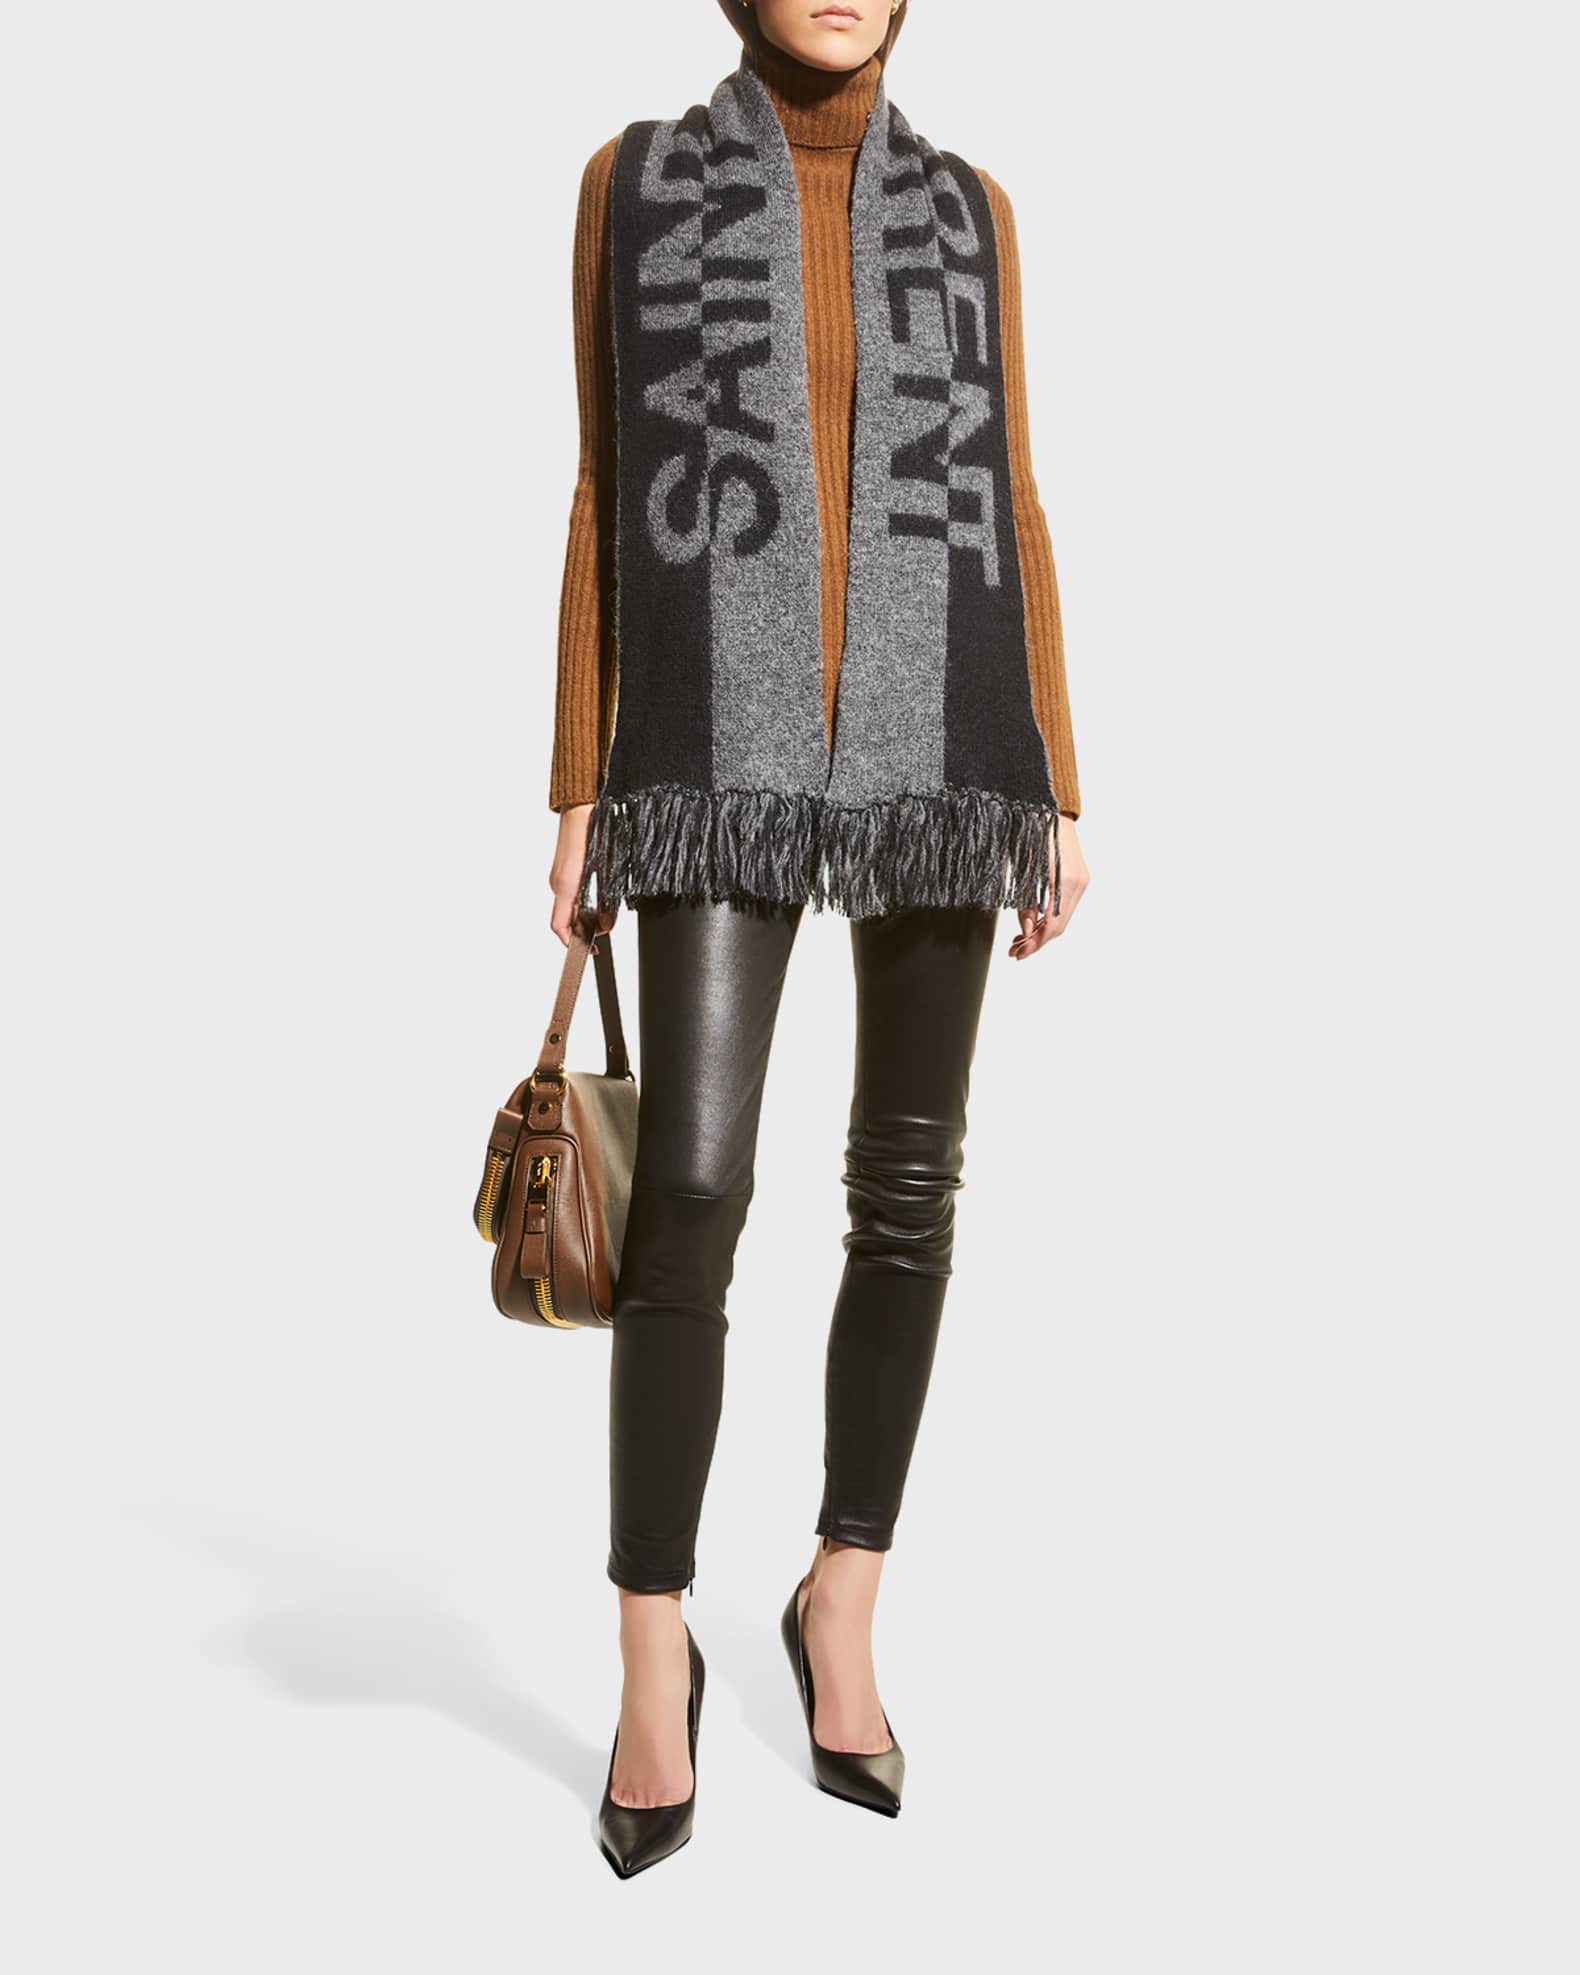 Louis Vuitton Monogram Split Scarf Black 100% Cashmere AUTHENTIC